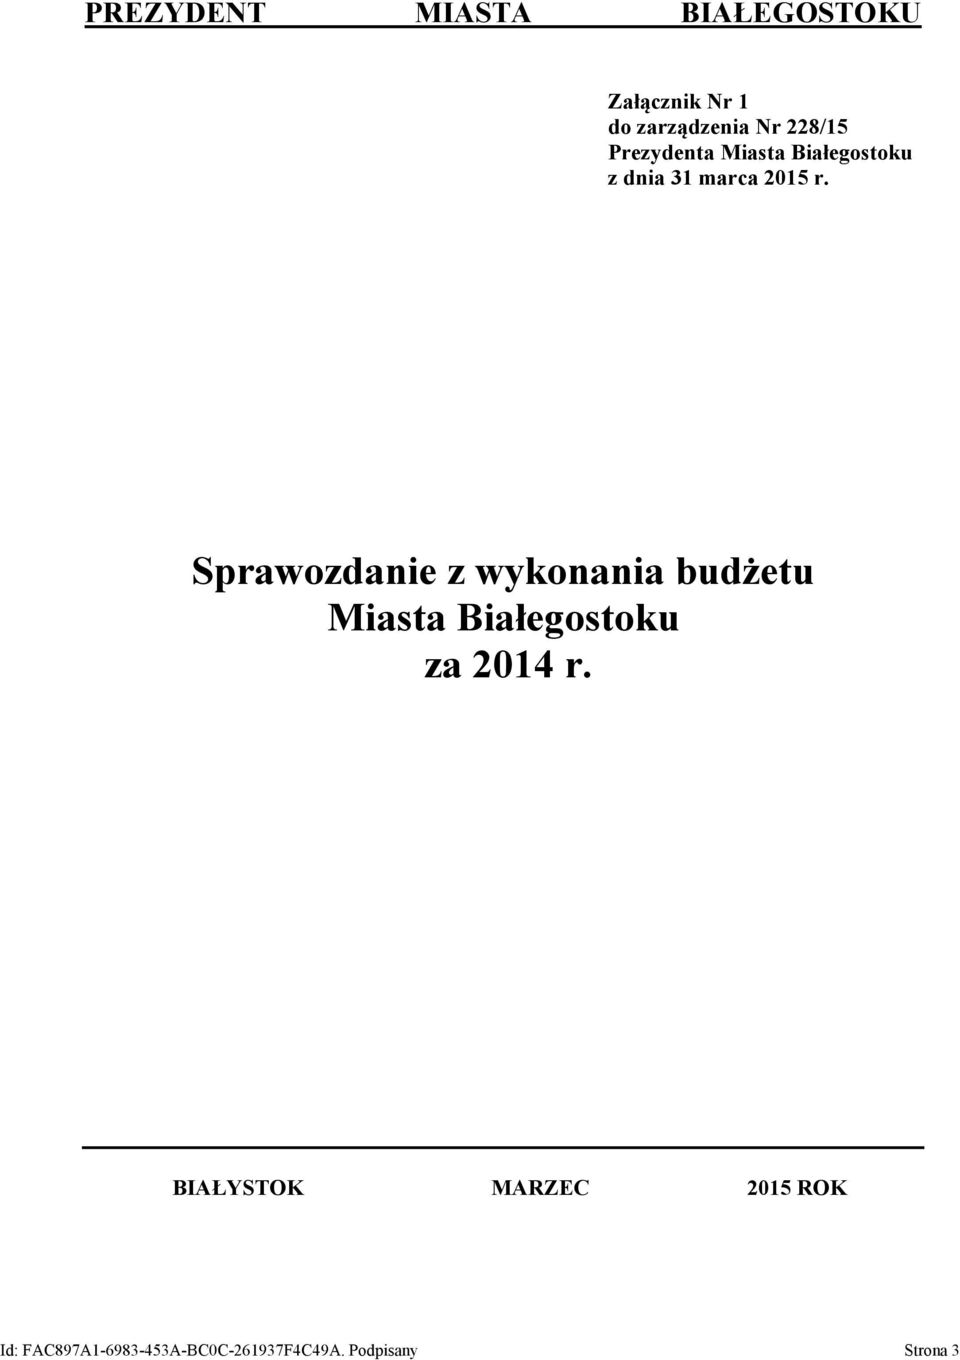 Sprawozdanie z wykonania budżetu Miasta Białegostoku za 2014 r.